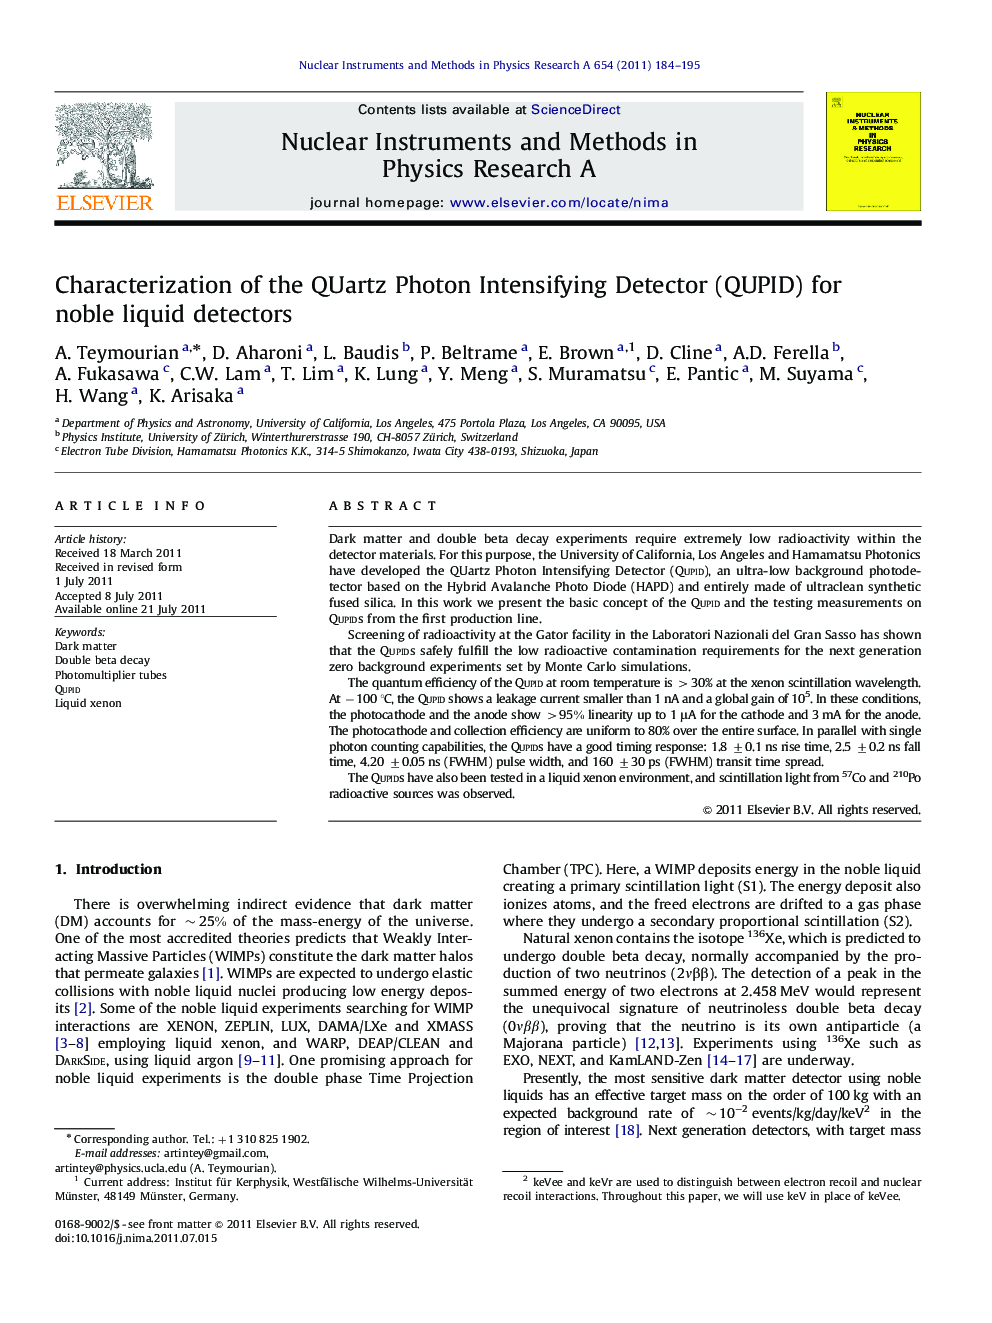 Characterization of the QUartz Photon Intensifying Detector (QUPID) for noble liquid detectors